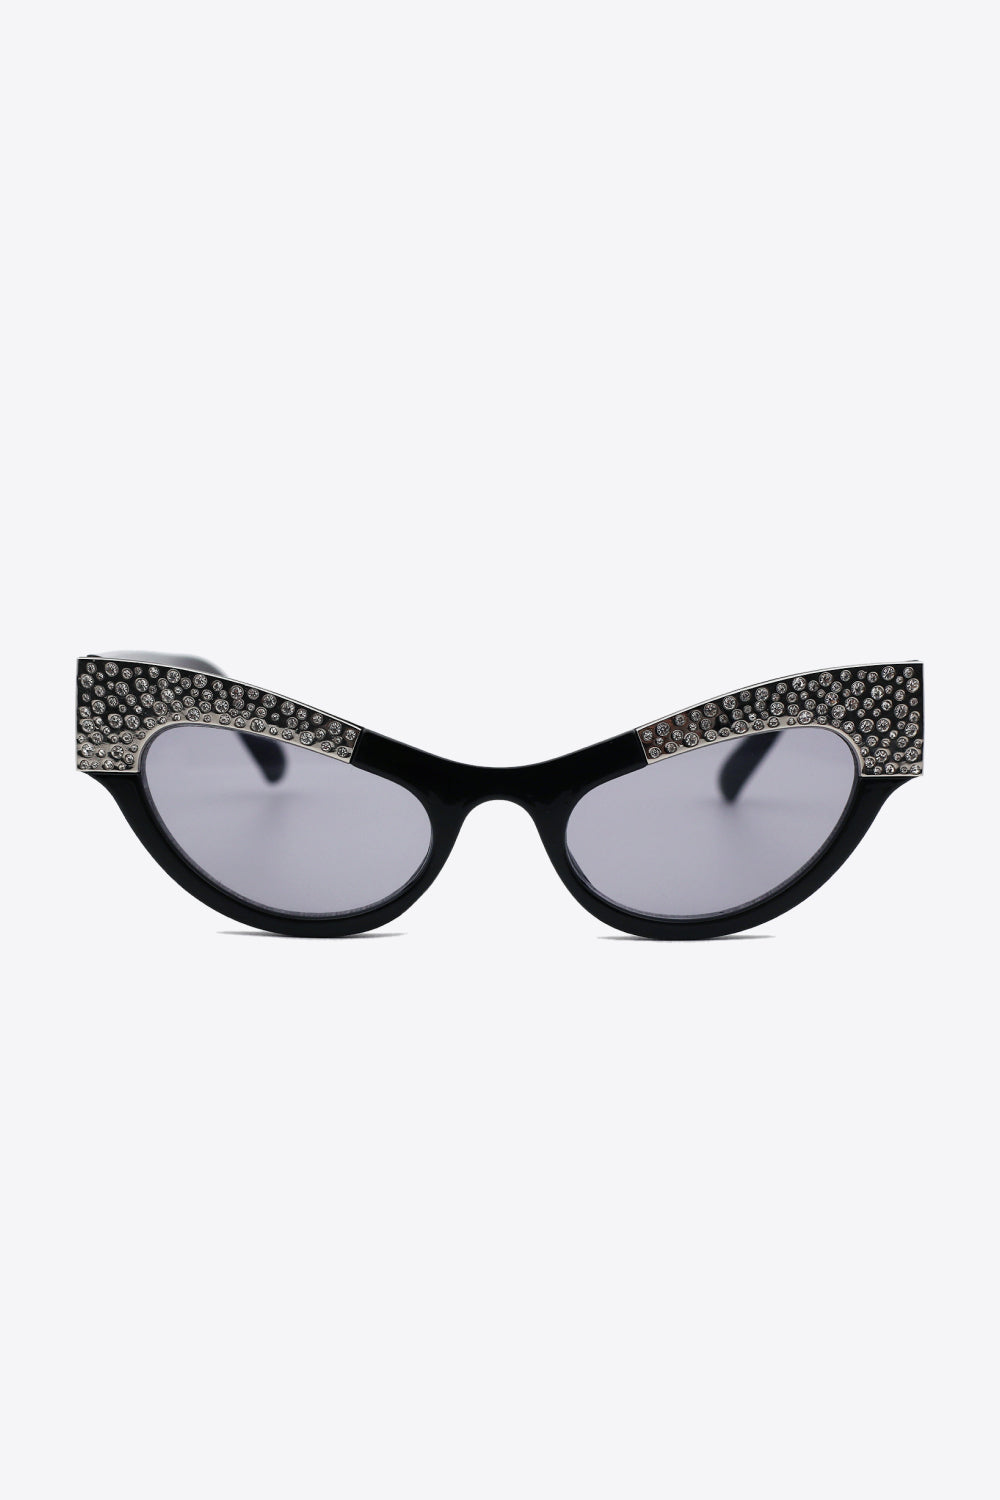 UV400 Rhinestone Trim Cat-Eye Sunglasses - Online Only